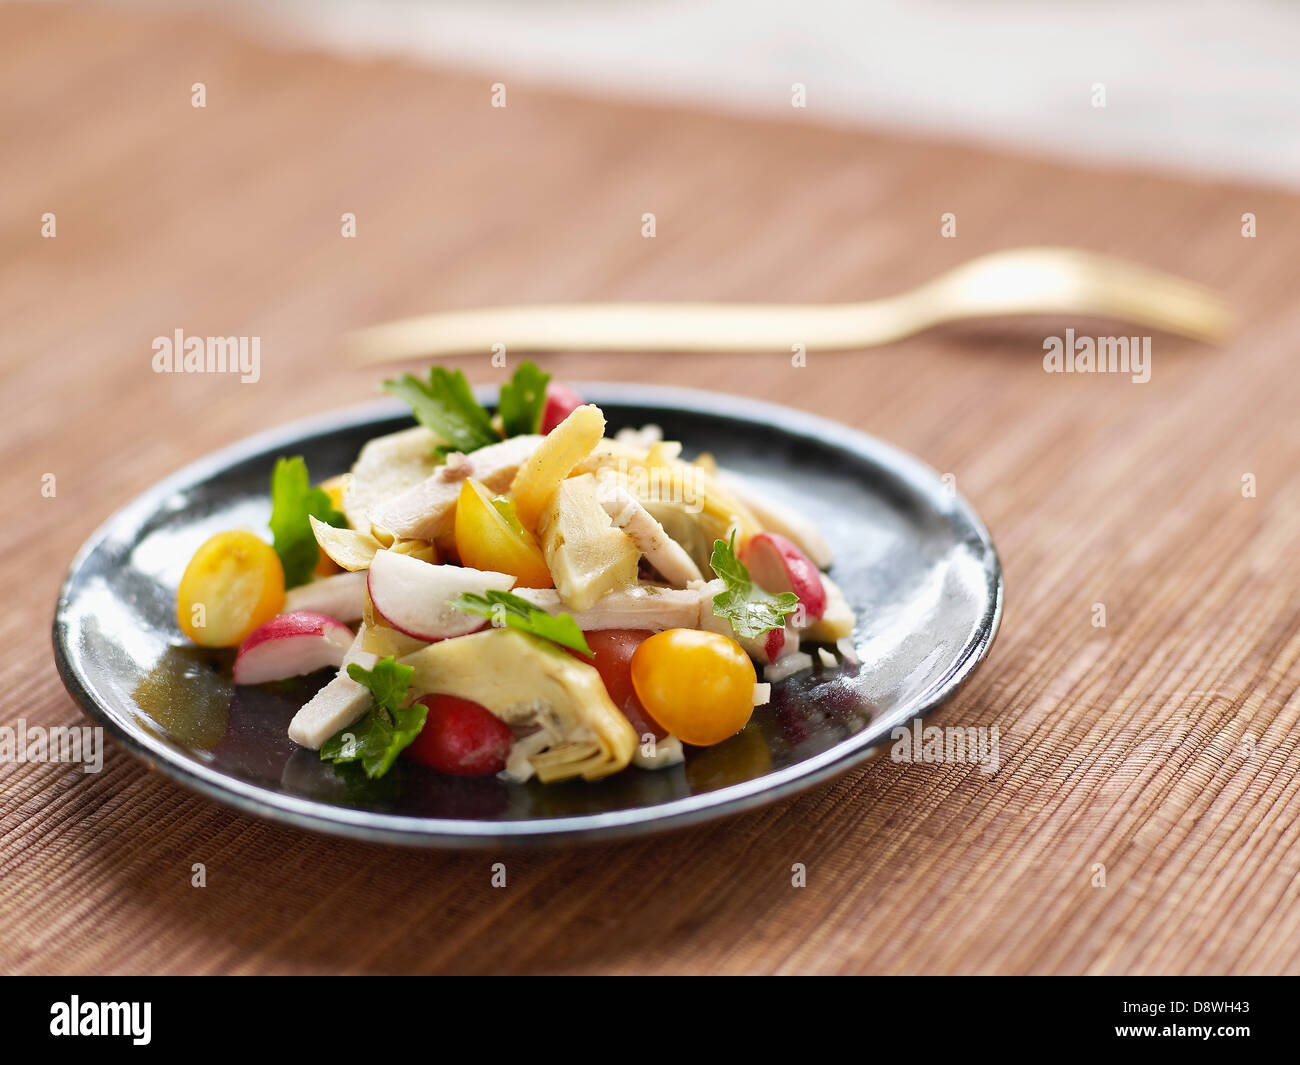 Carciofo,ravanello e ciliegio giallo insalata di pomodoro Foto Stock